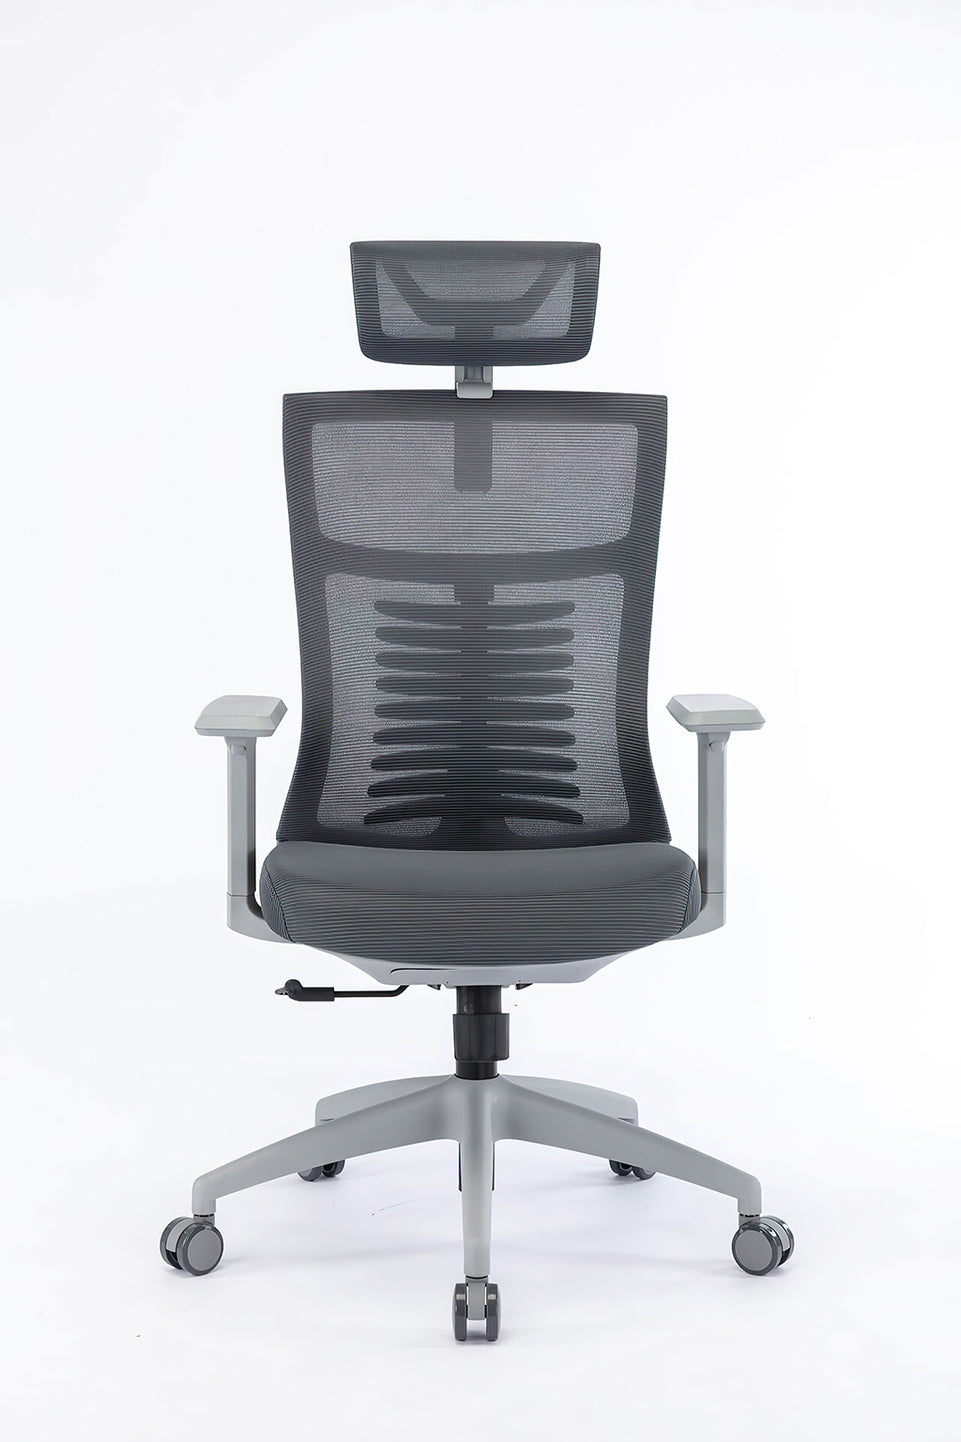 Fashion Computer Office Chair Breathable Mesh Chair Sponge Cushion BGY-103